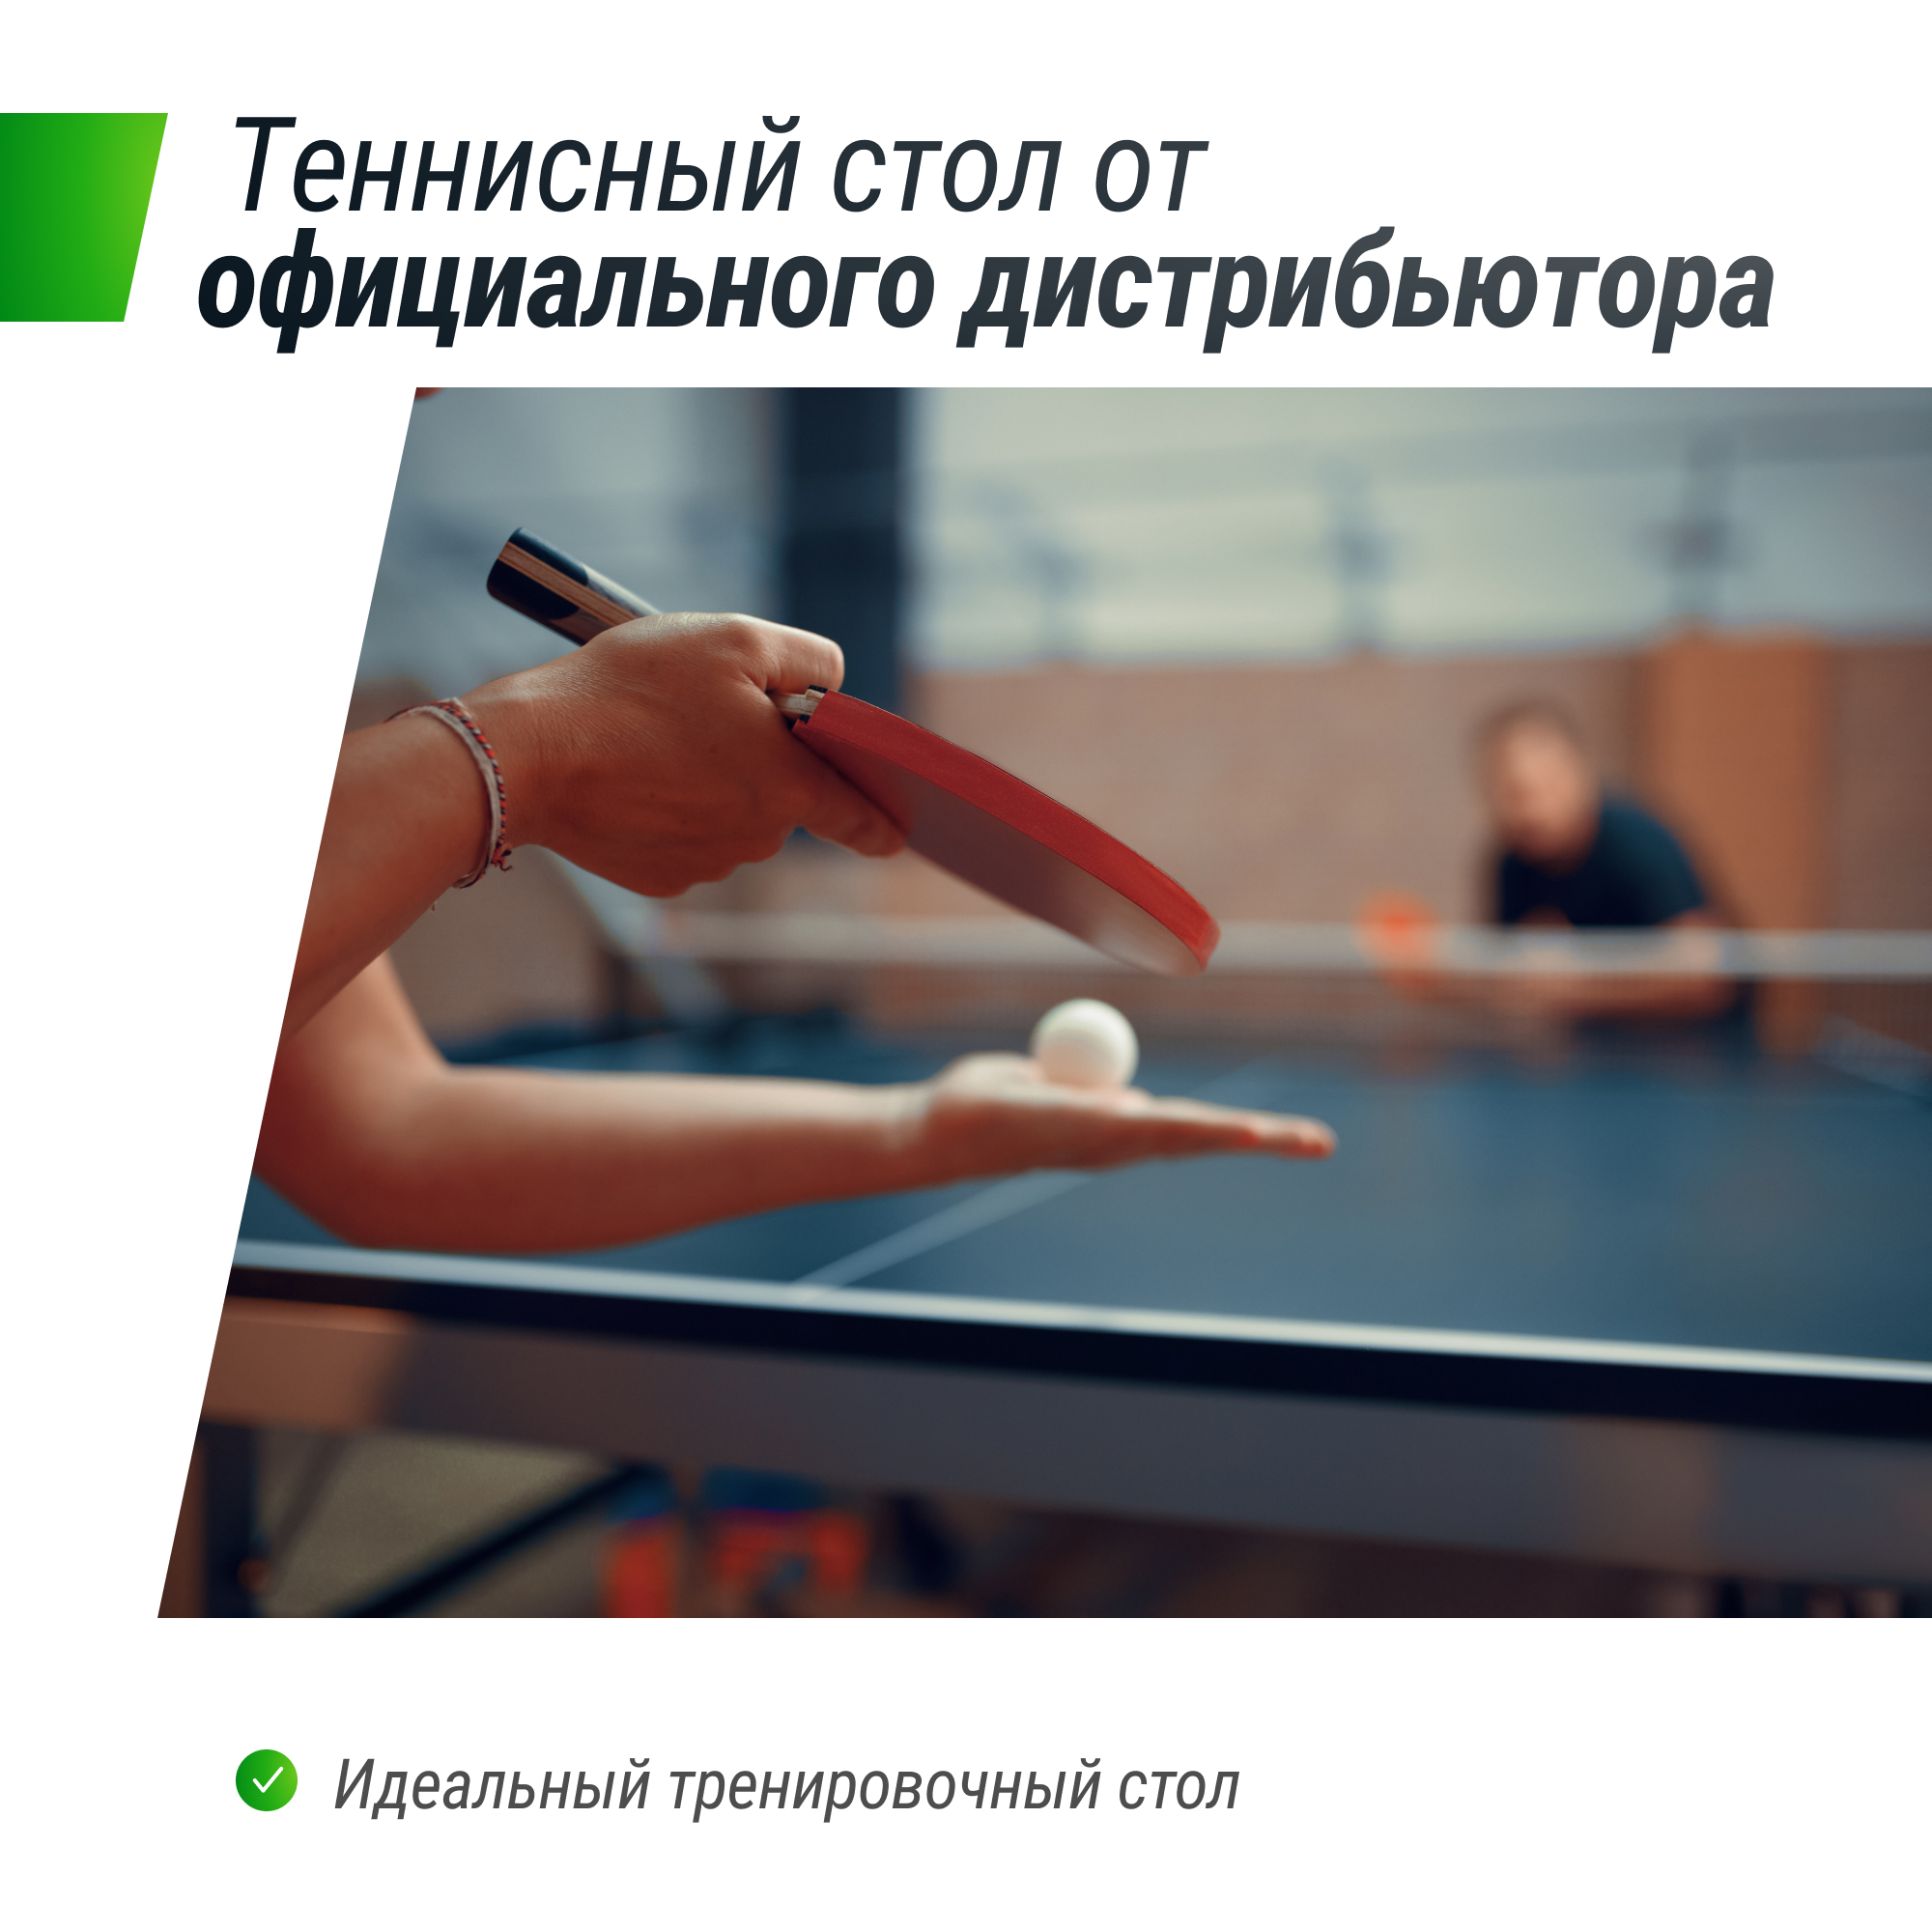 Профессиональный теннисный стол UNIX Line 25 mm MDF (Green) - 5 